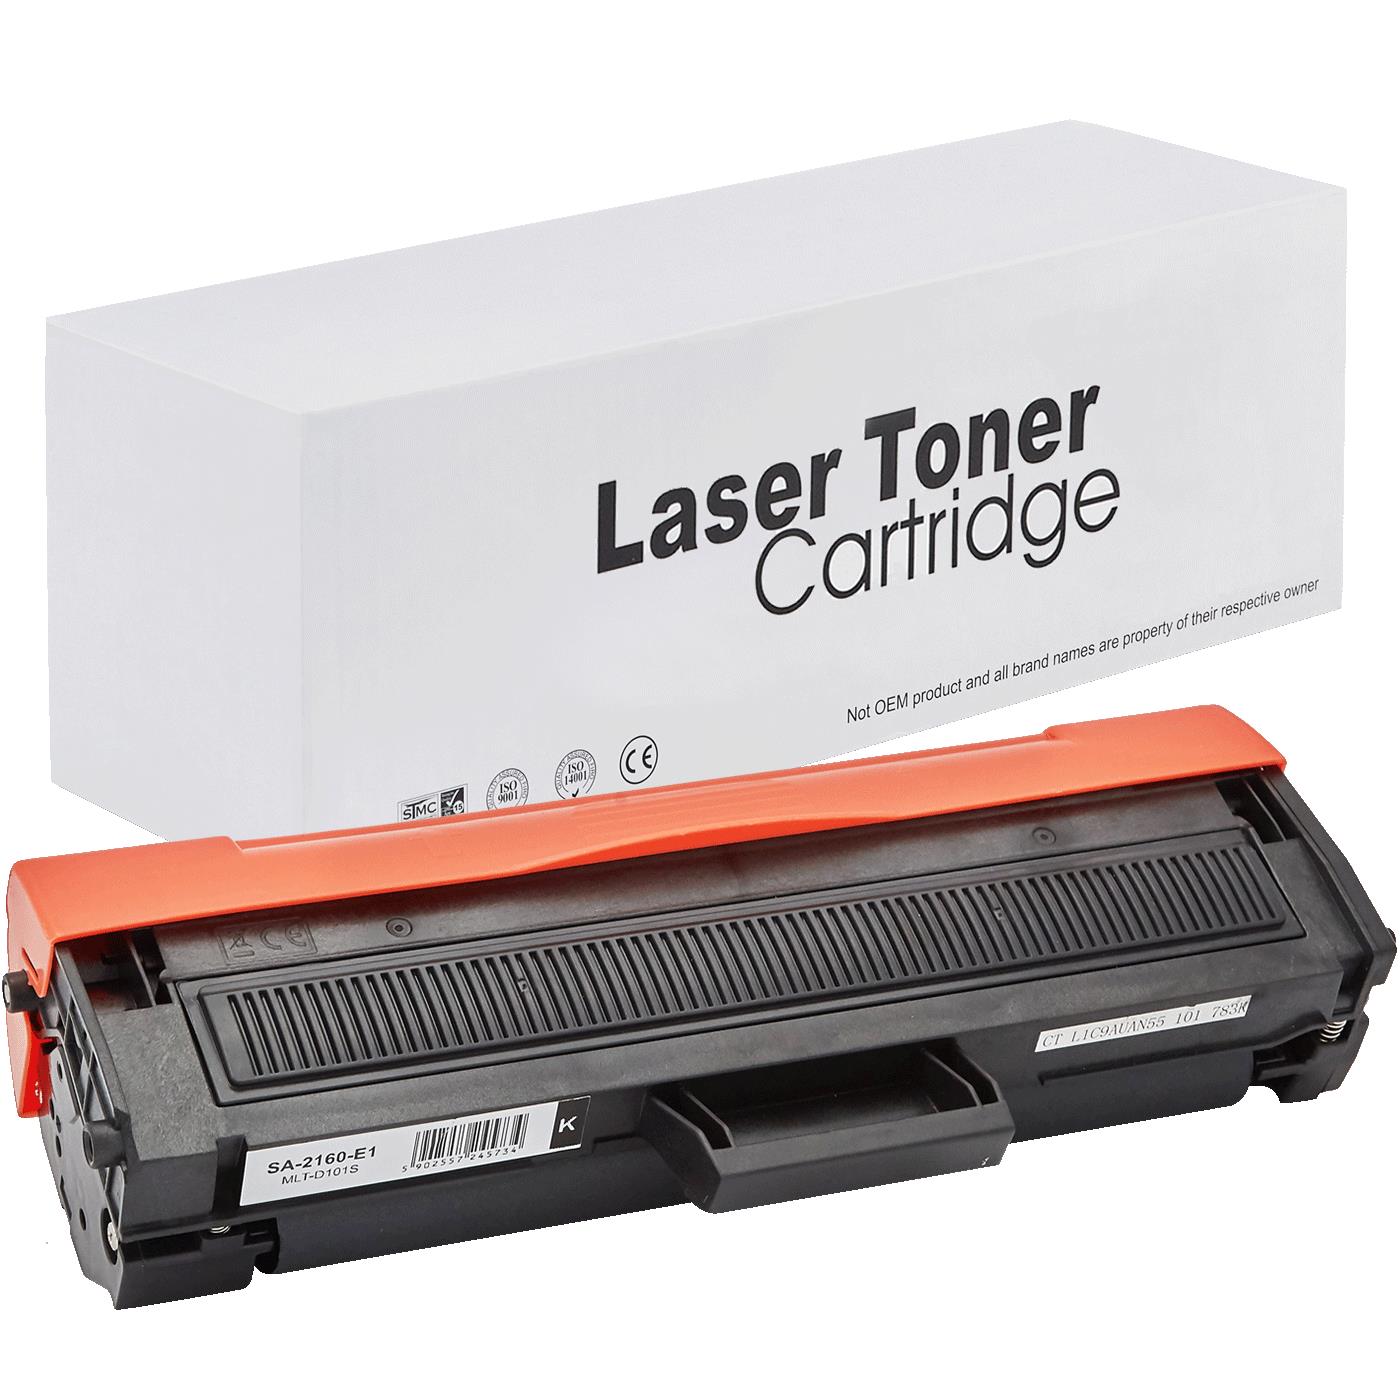 съвместима тонер касета за принтери и печатащи устройства на Samsung ML-1661 Toner SA-2160 | MLT-D101S / D101S / 101S. Ниски цени, прецизно изпълнение, високо качество.